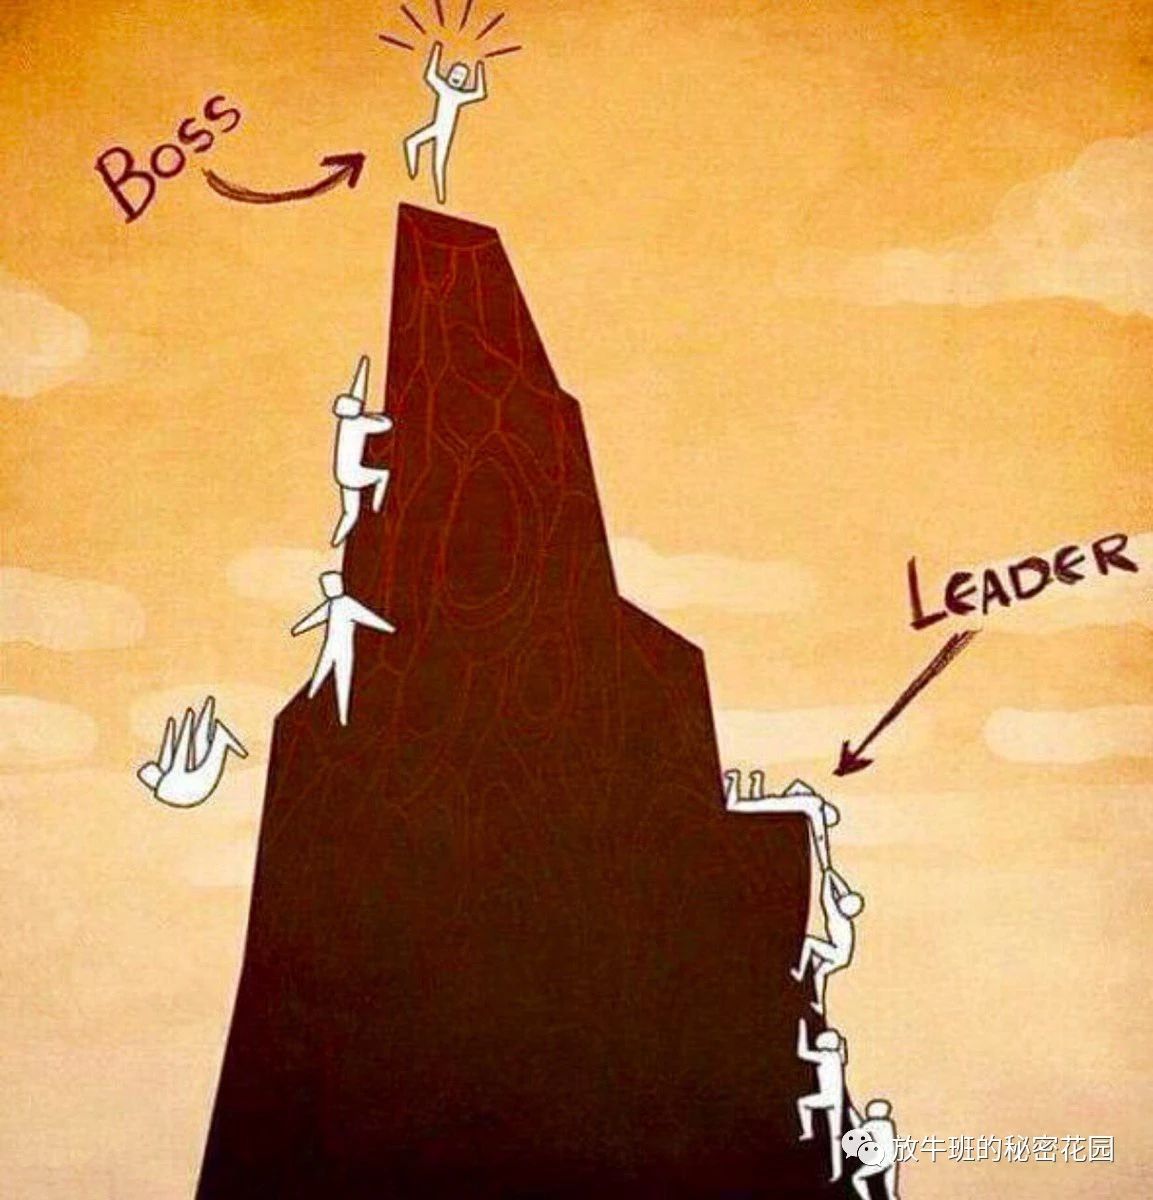 《如何担任领导者——领导力初学者指南》